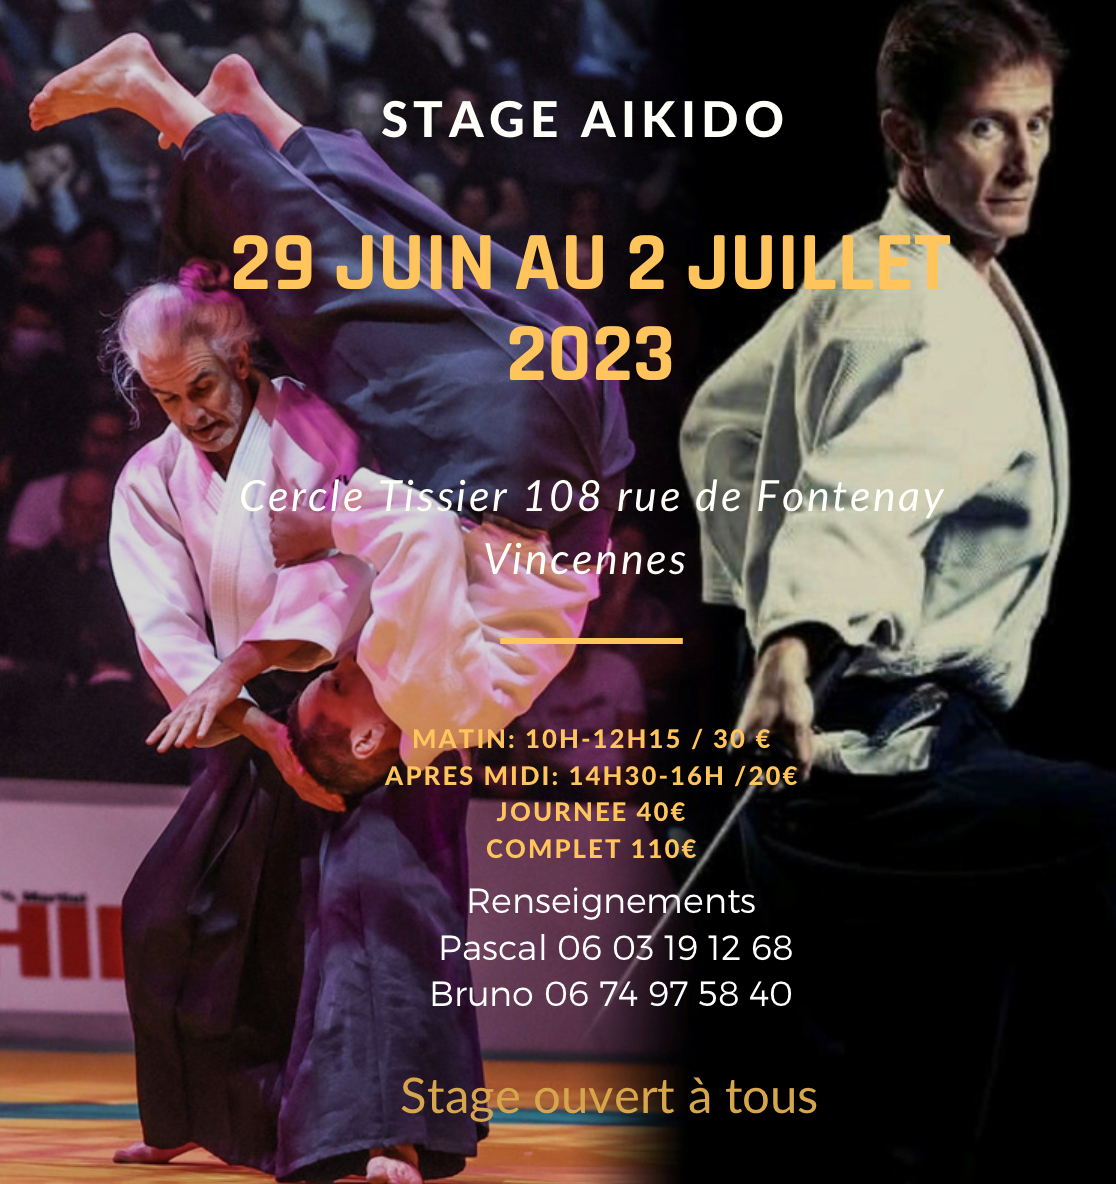 Affiche du Stage d'Aïkido à Vincennes animé par Bruno Gonzalez et Pascal Guillemin du jeudi 29 juin 2023 au dimanche 2 juillet 2023